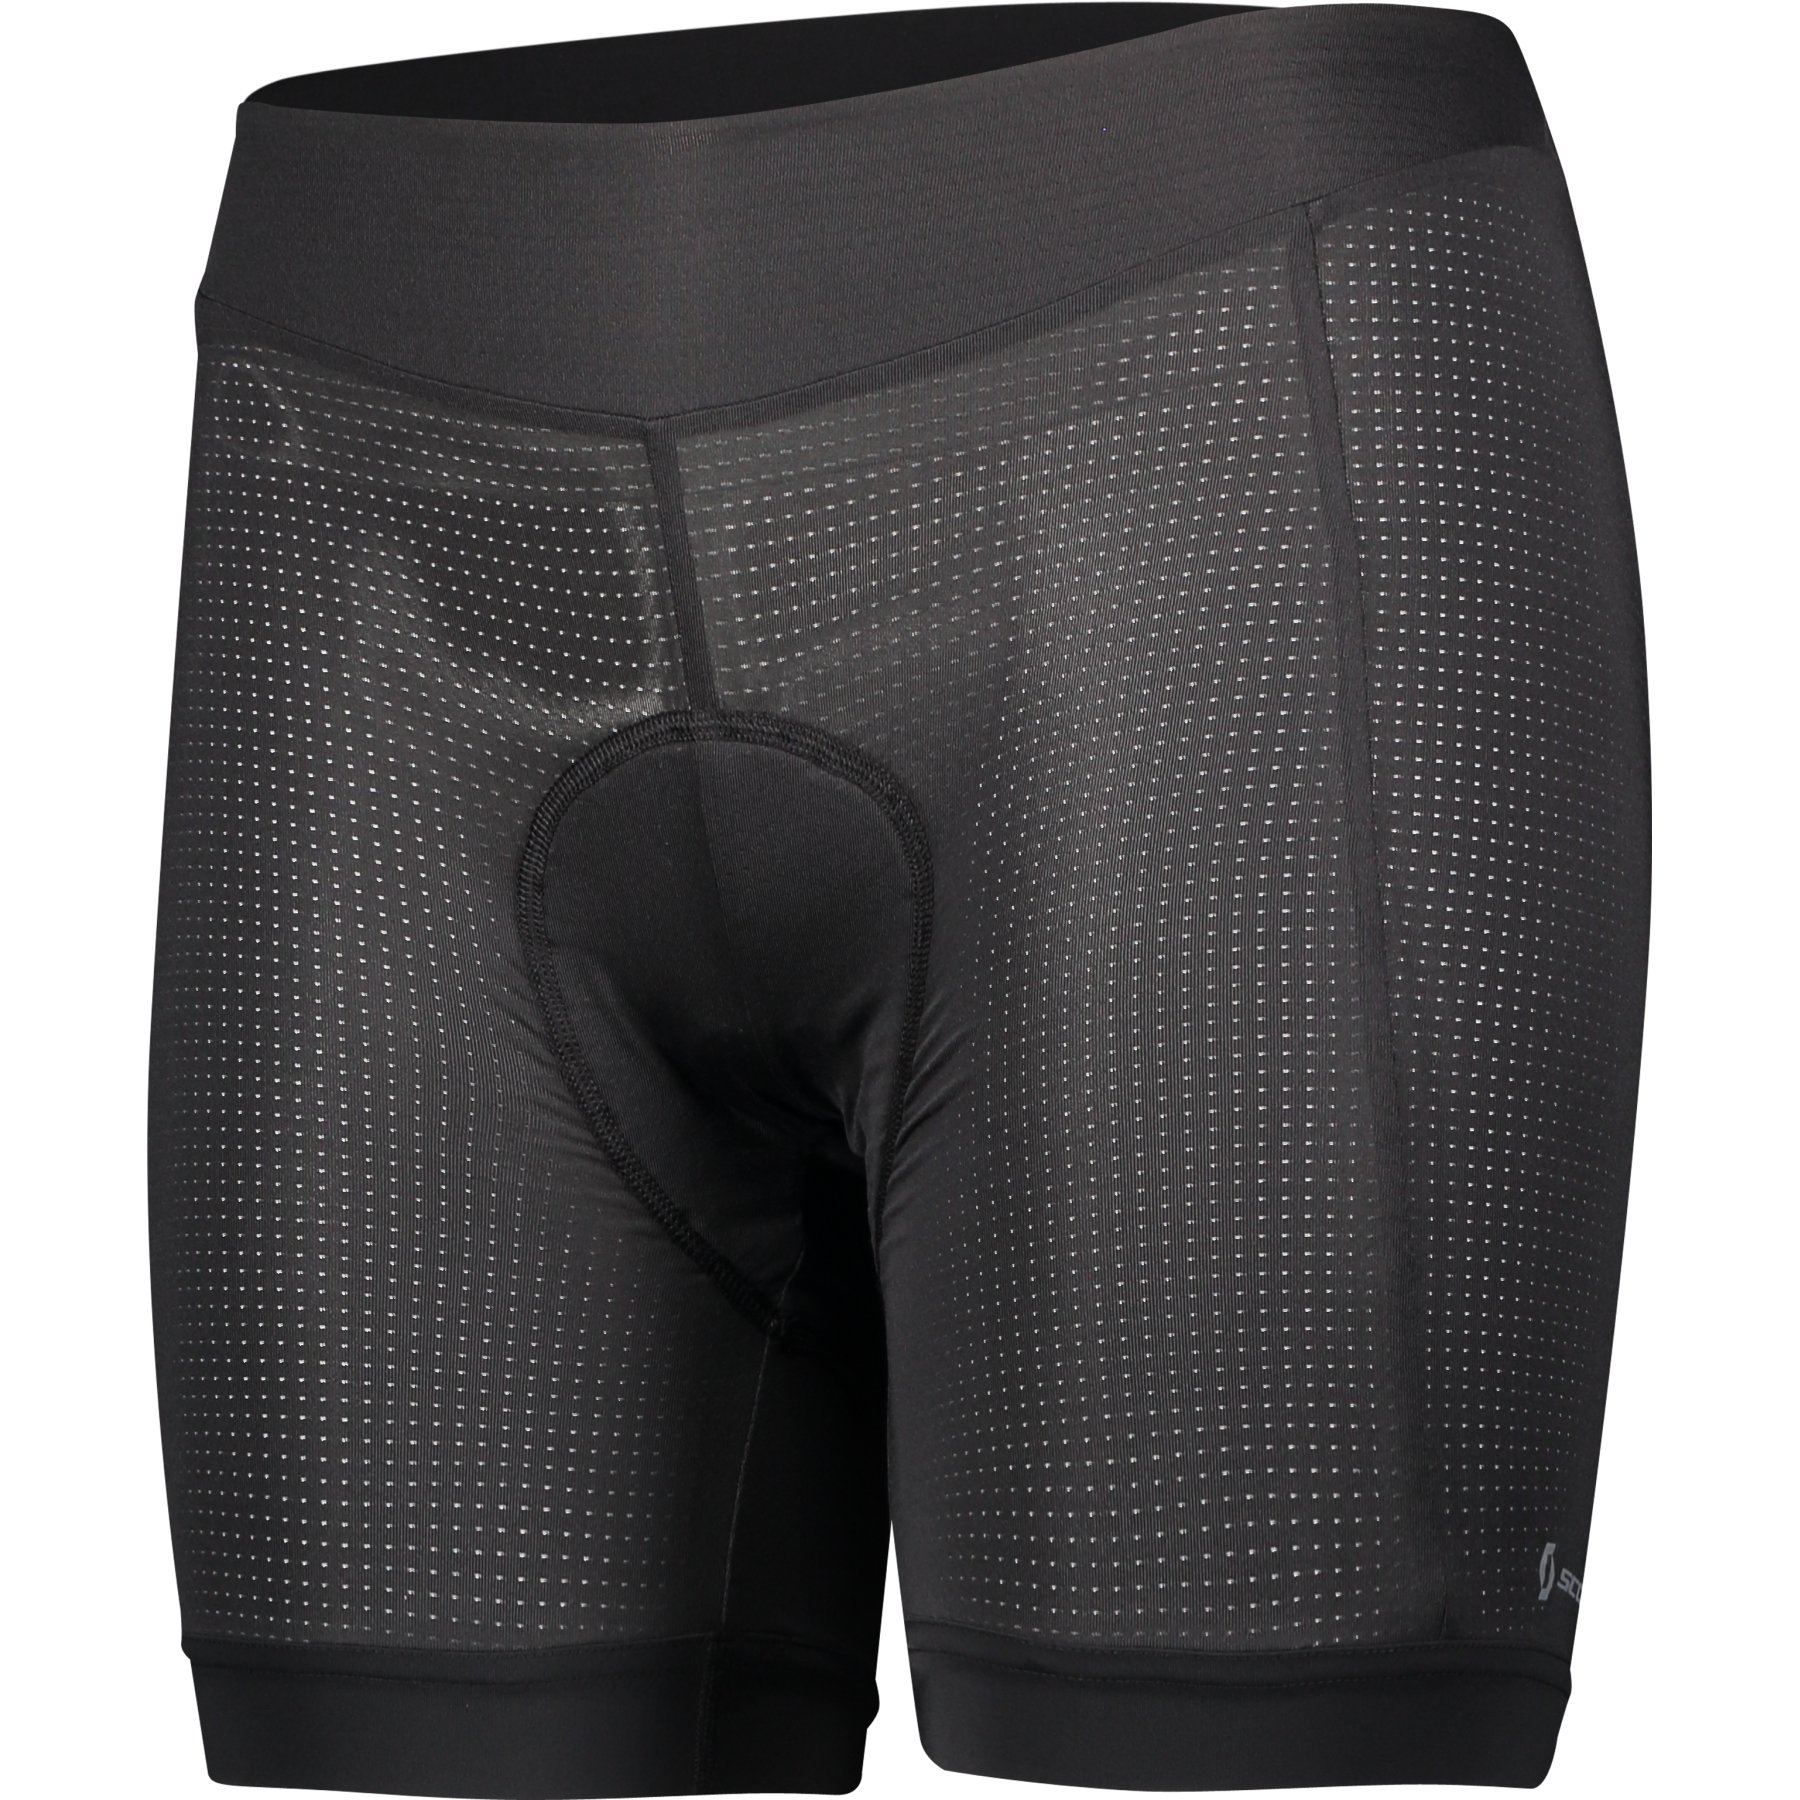 Produktbild von SCOTT Trail Underwear Pro +++ Fahrrad-Unterhose Damen - schwarz